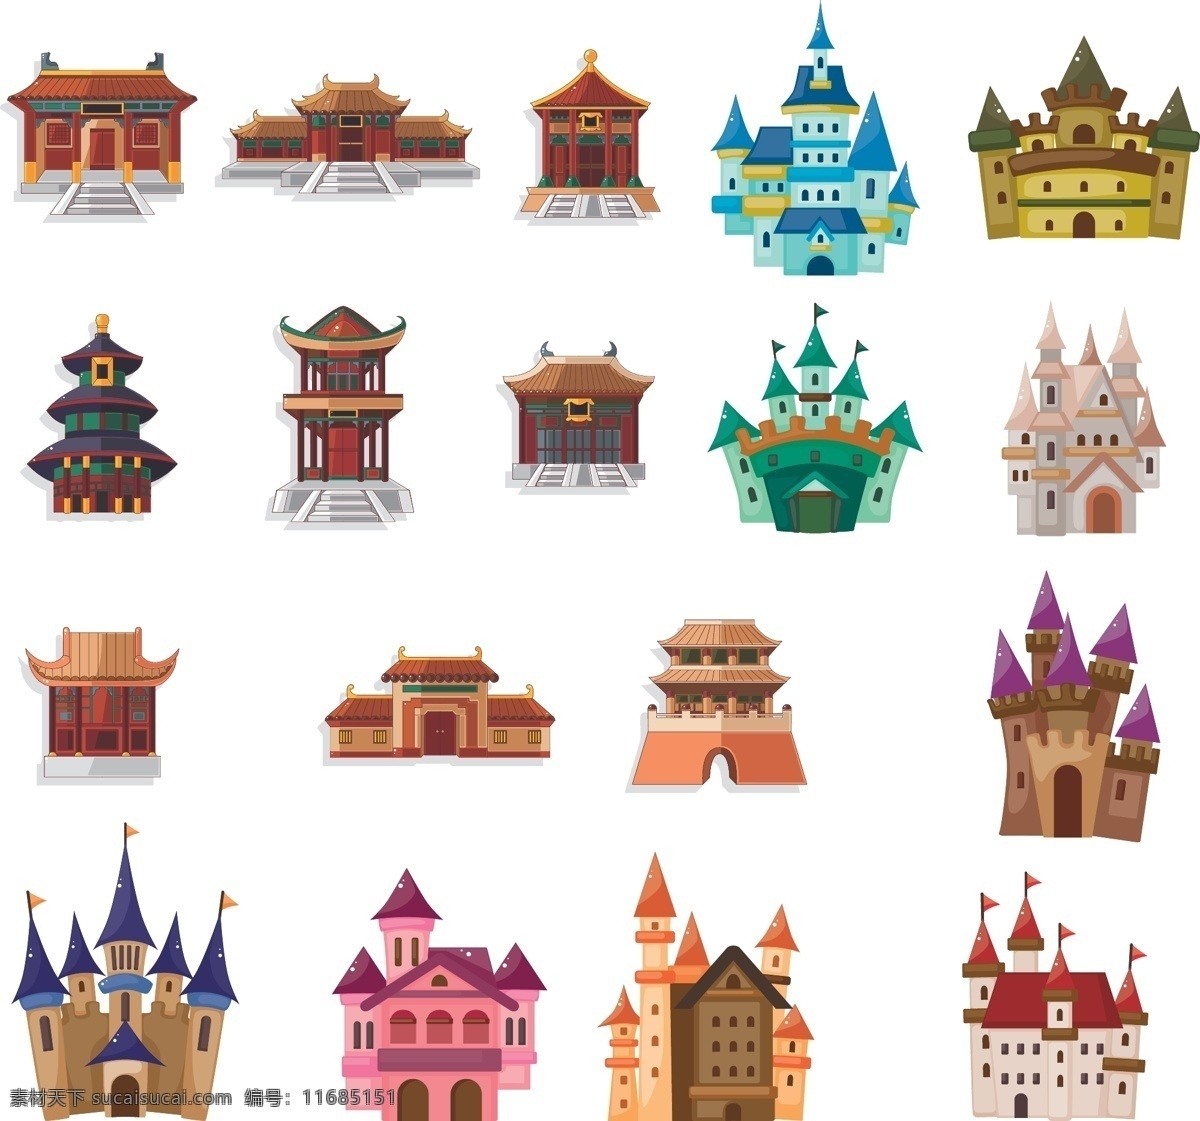 城堡 宫殿 图标 矢量 标签 建筑 童话 皇宫 古代 插画 背景 海报 画册 矢量建筑 环境设计 建筑设计